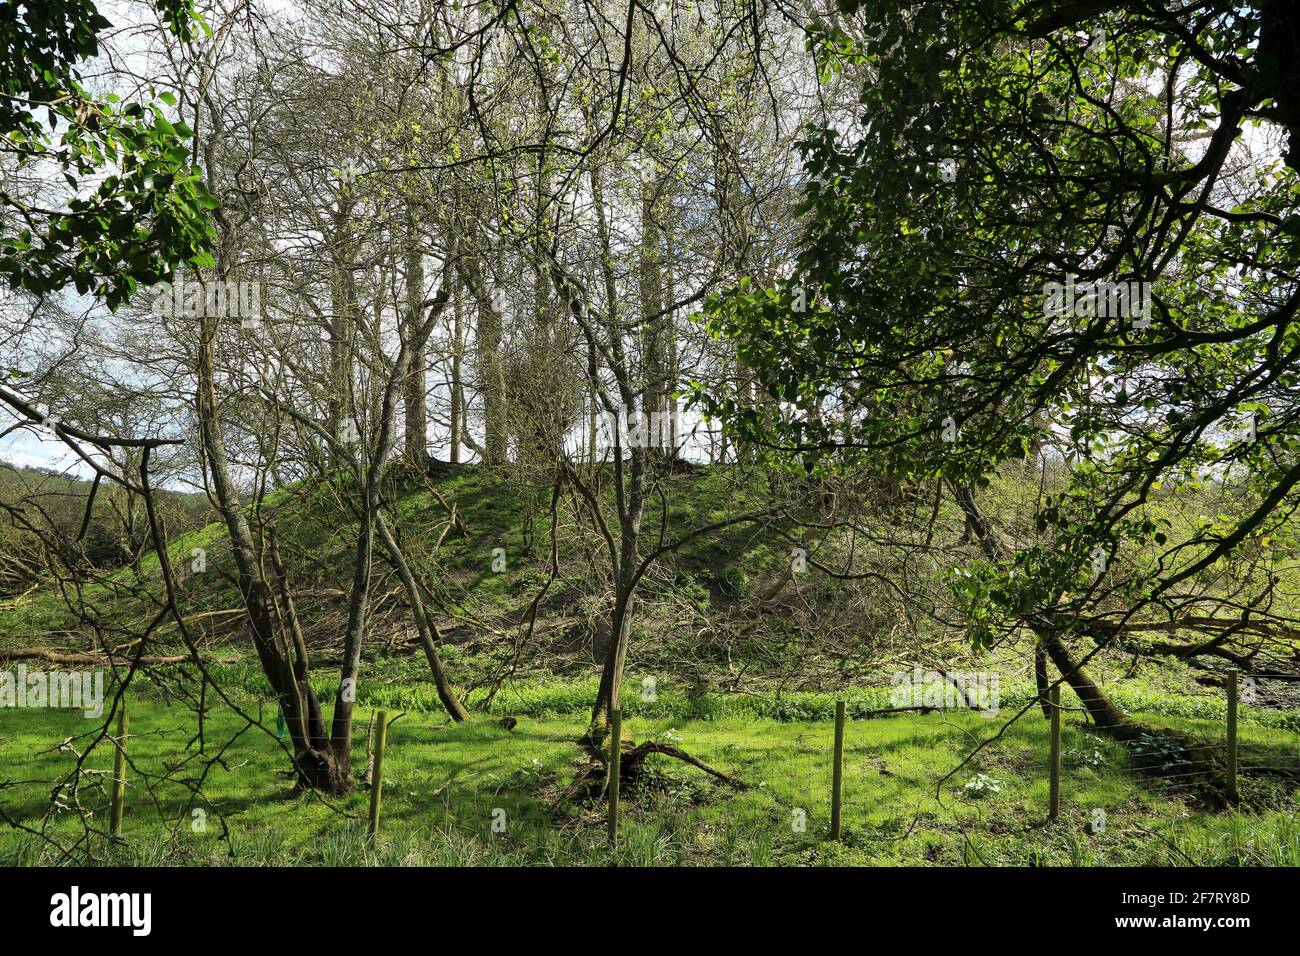 Motte und Bailey mit Bäumen, die daraus wachsen, in Stowting, Kent, England, Vereinigtes Königreich Stockfoto